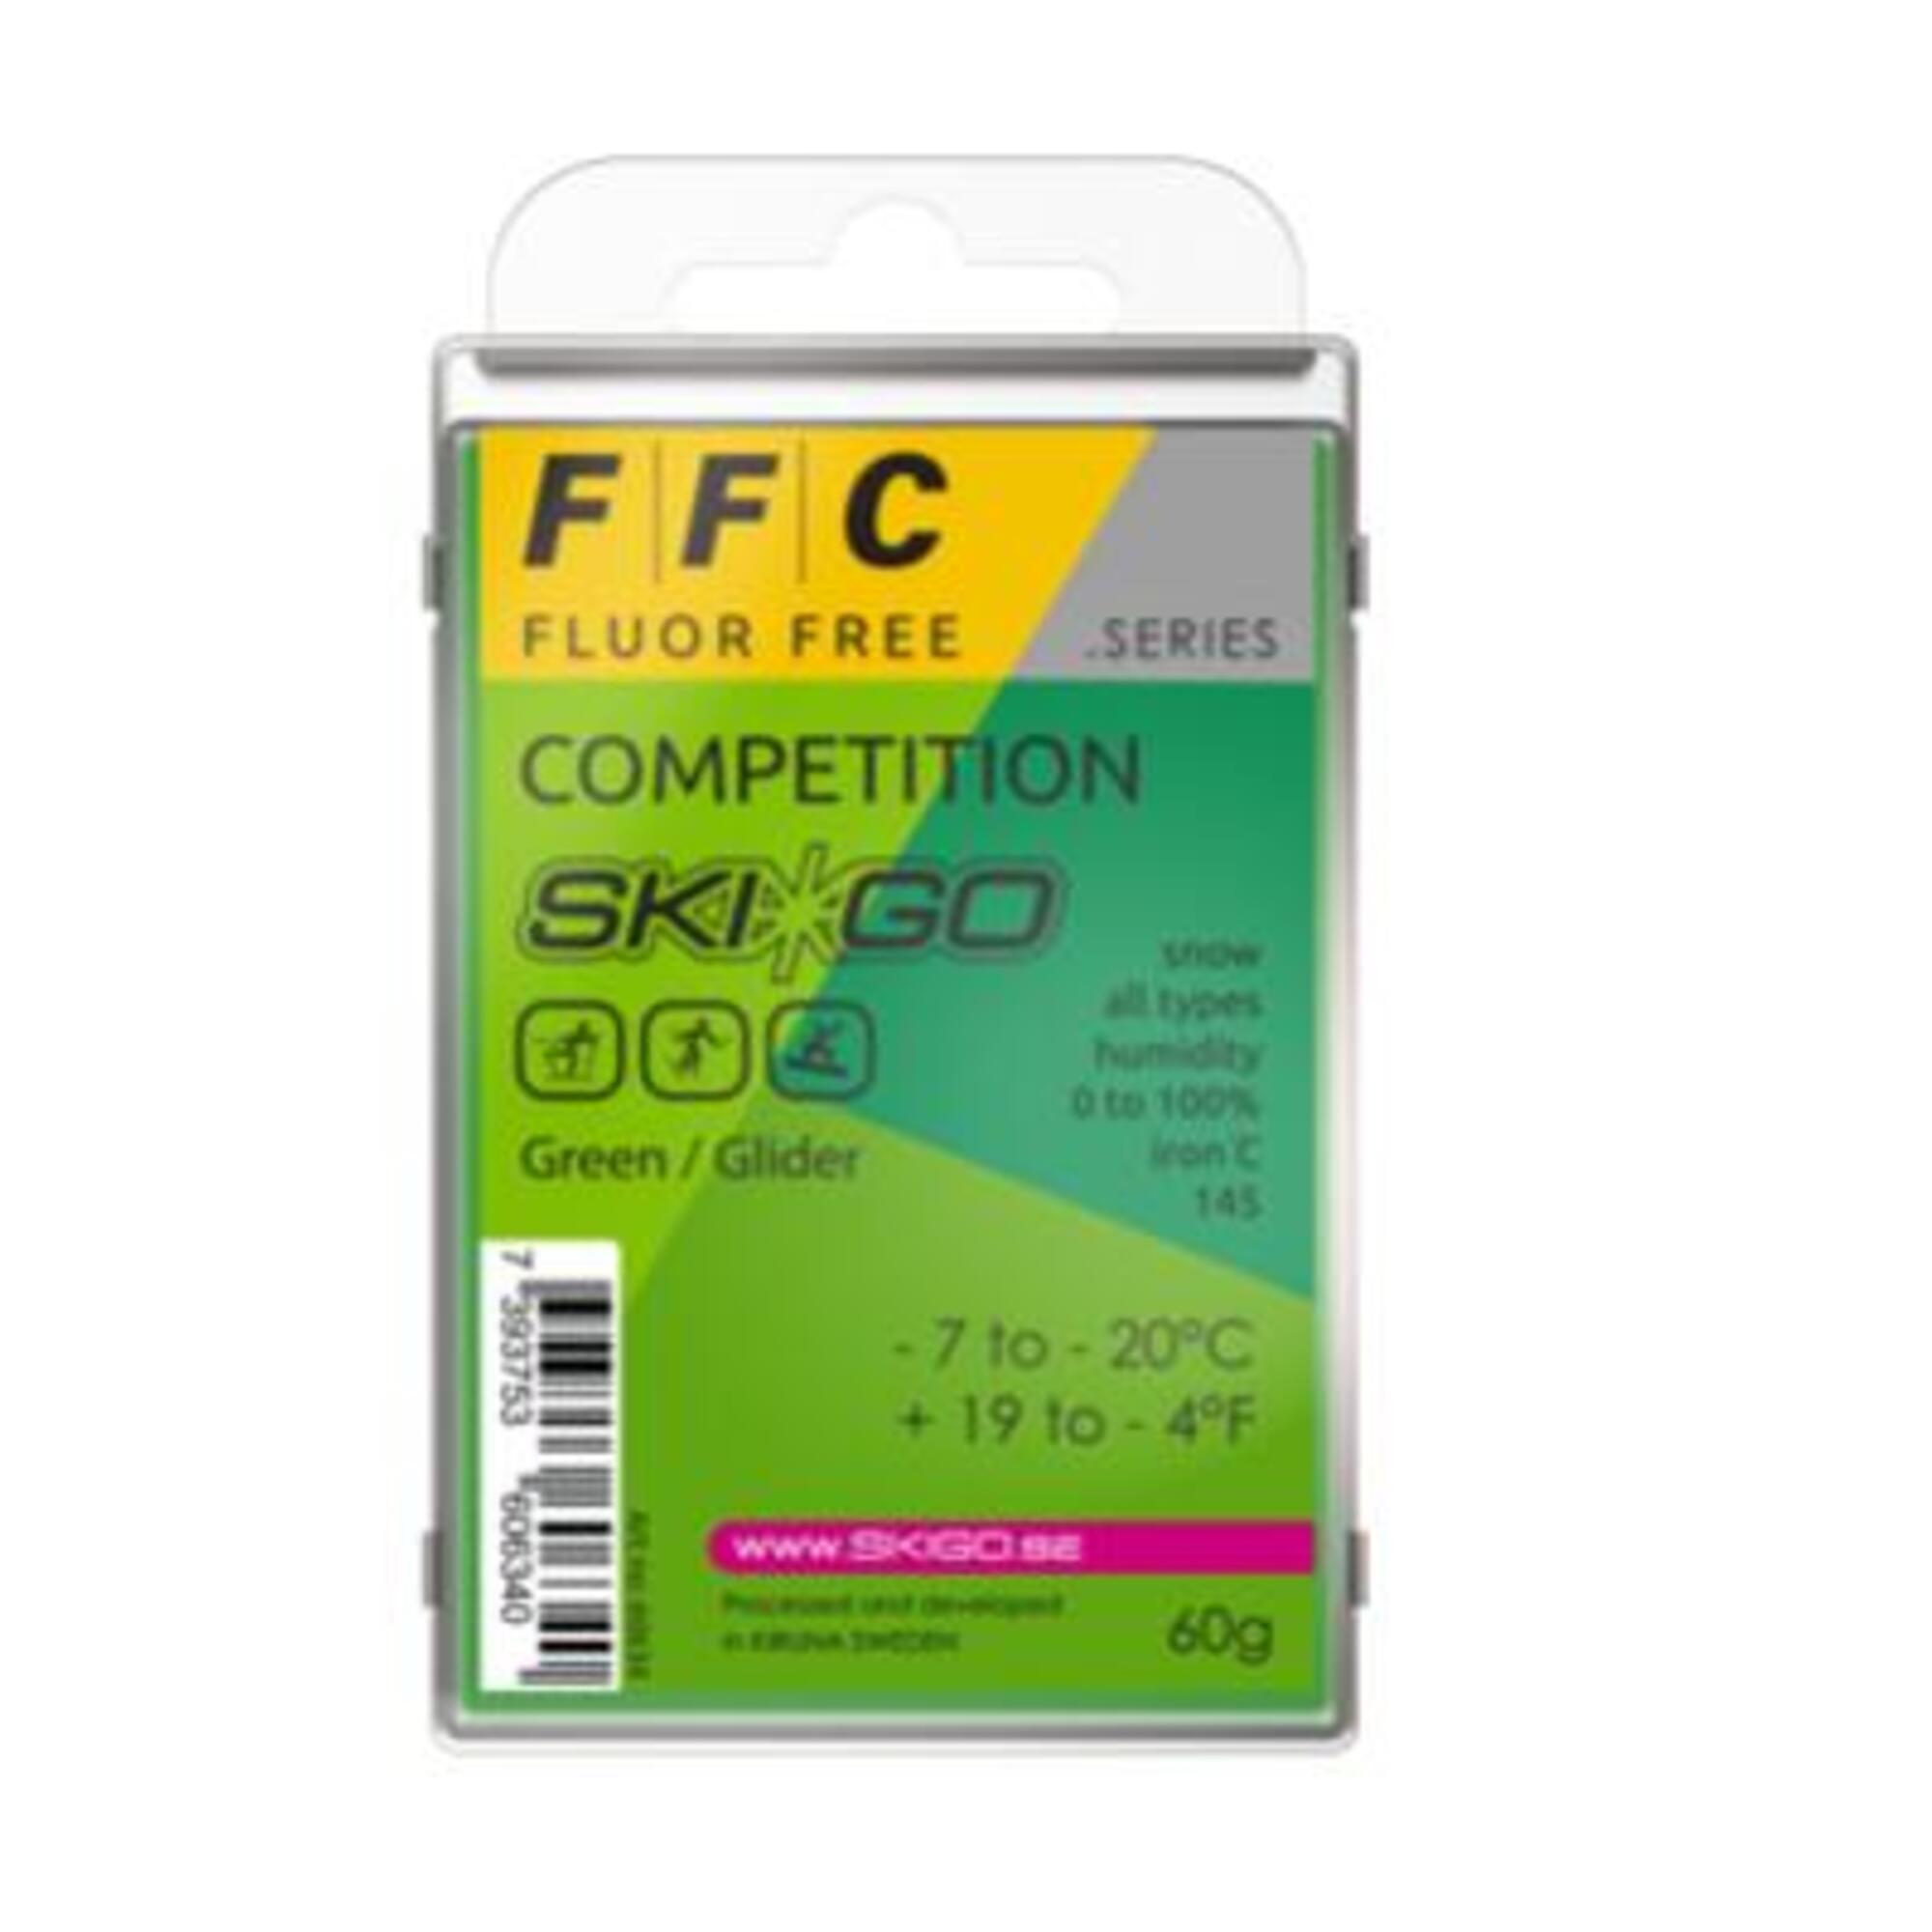  FFC fluorine-free wax 1/1